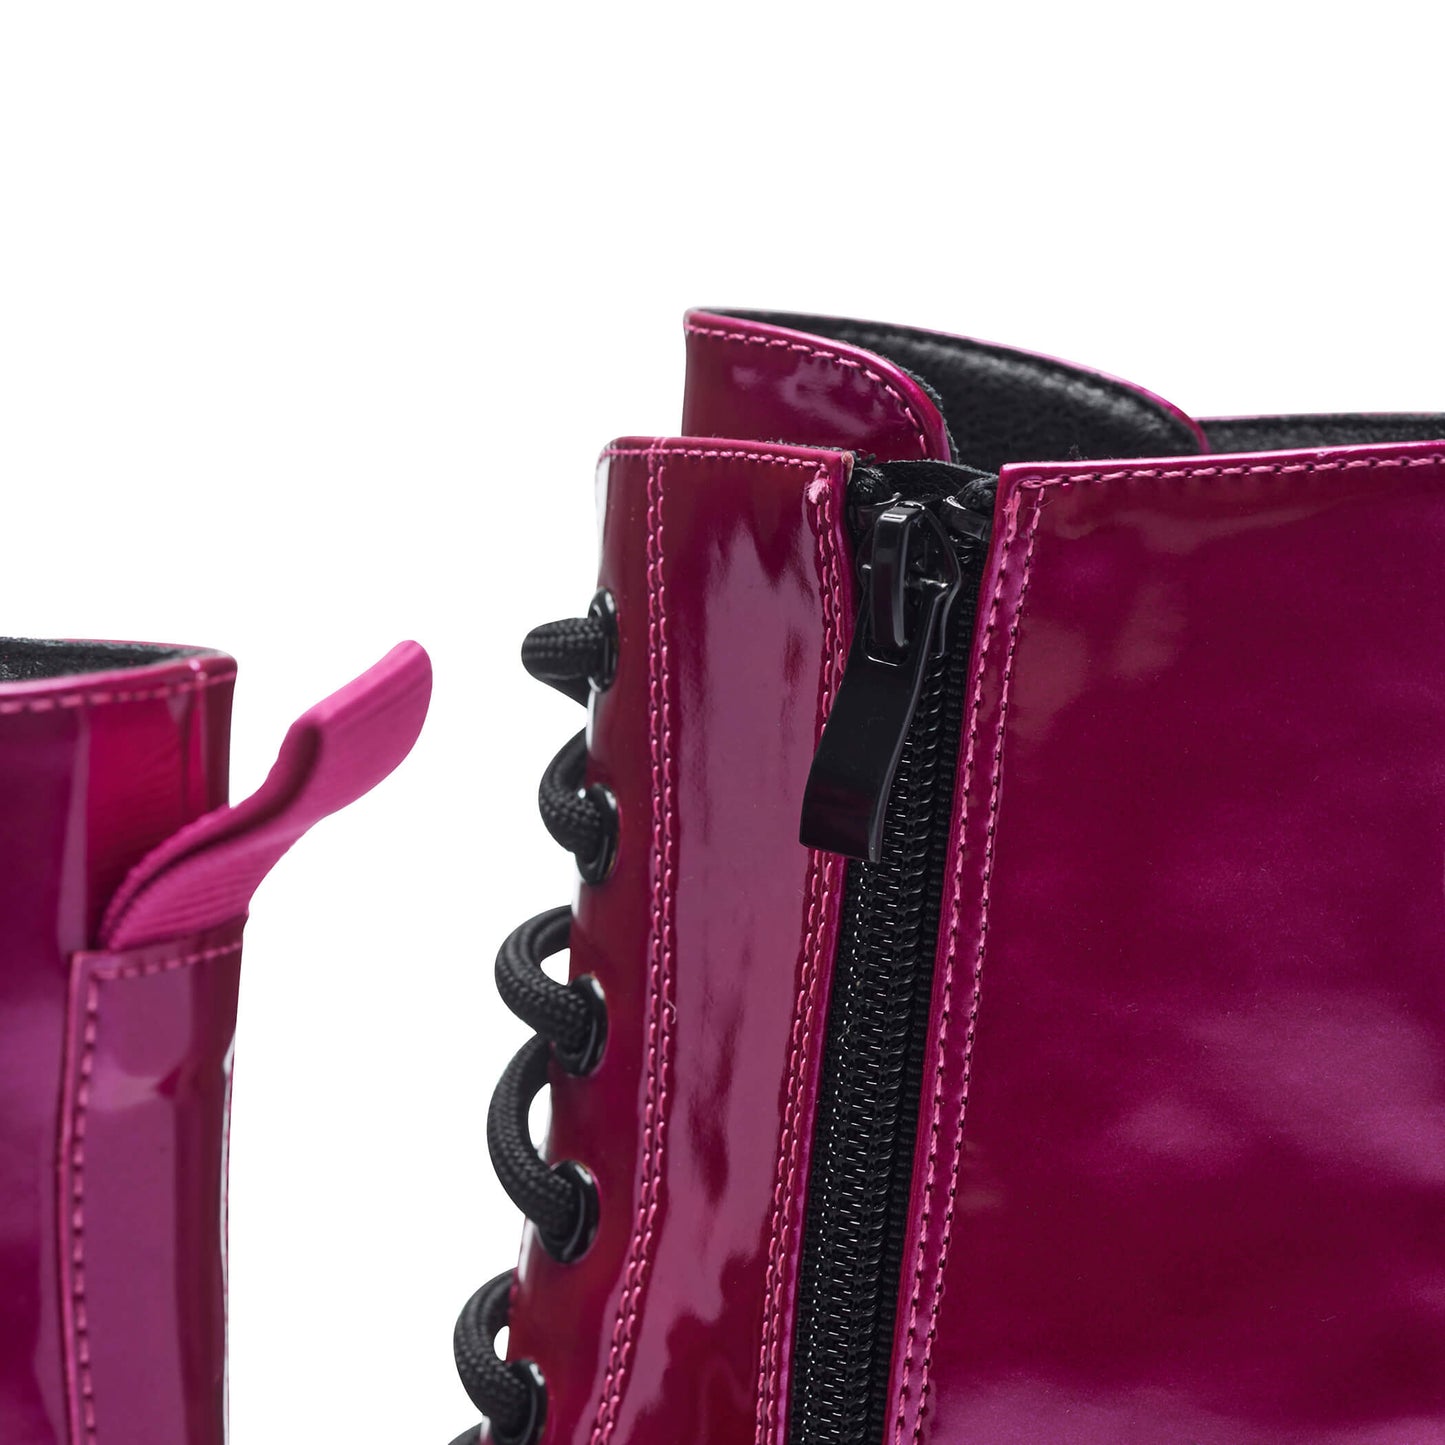 Deathwatch Trident Platform Boots - Candy Pink - KOI Footwear - Zip Detail